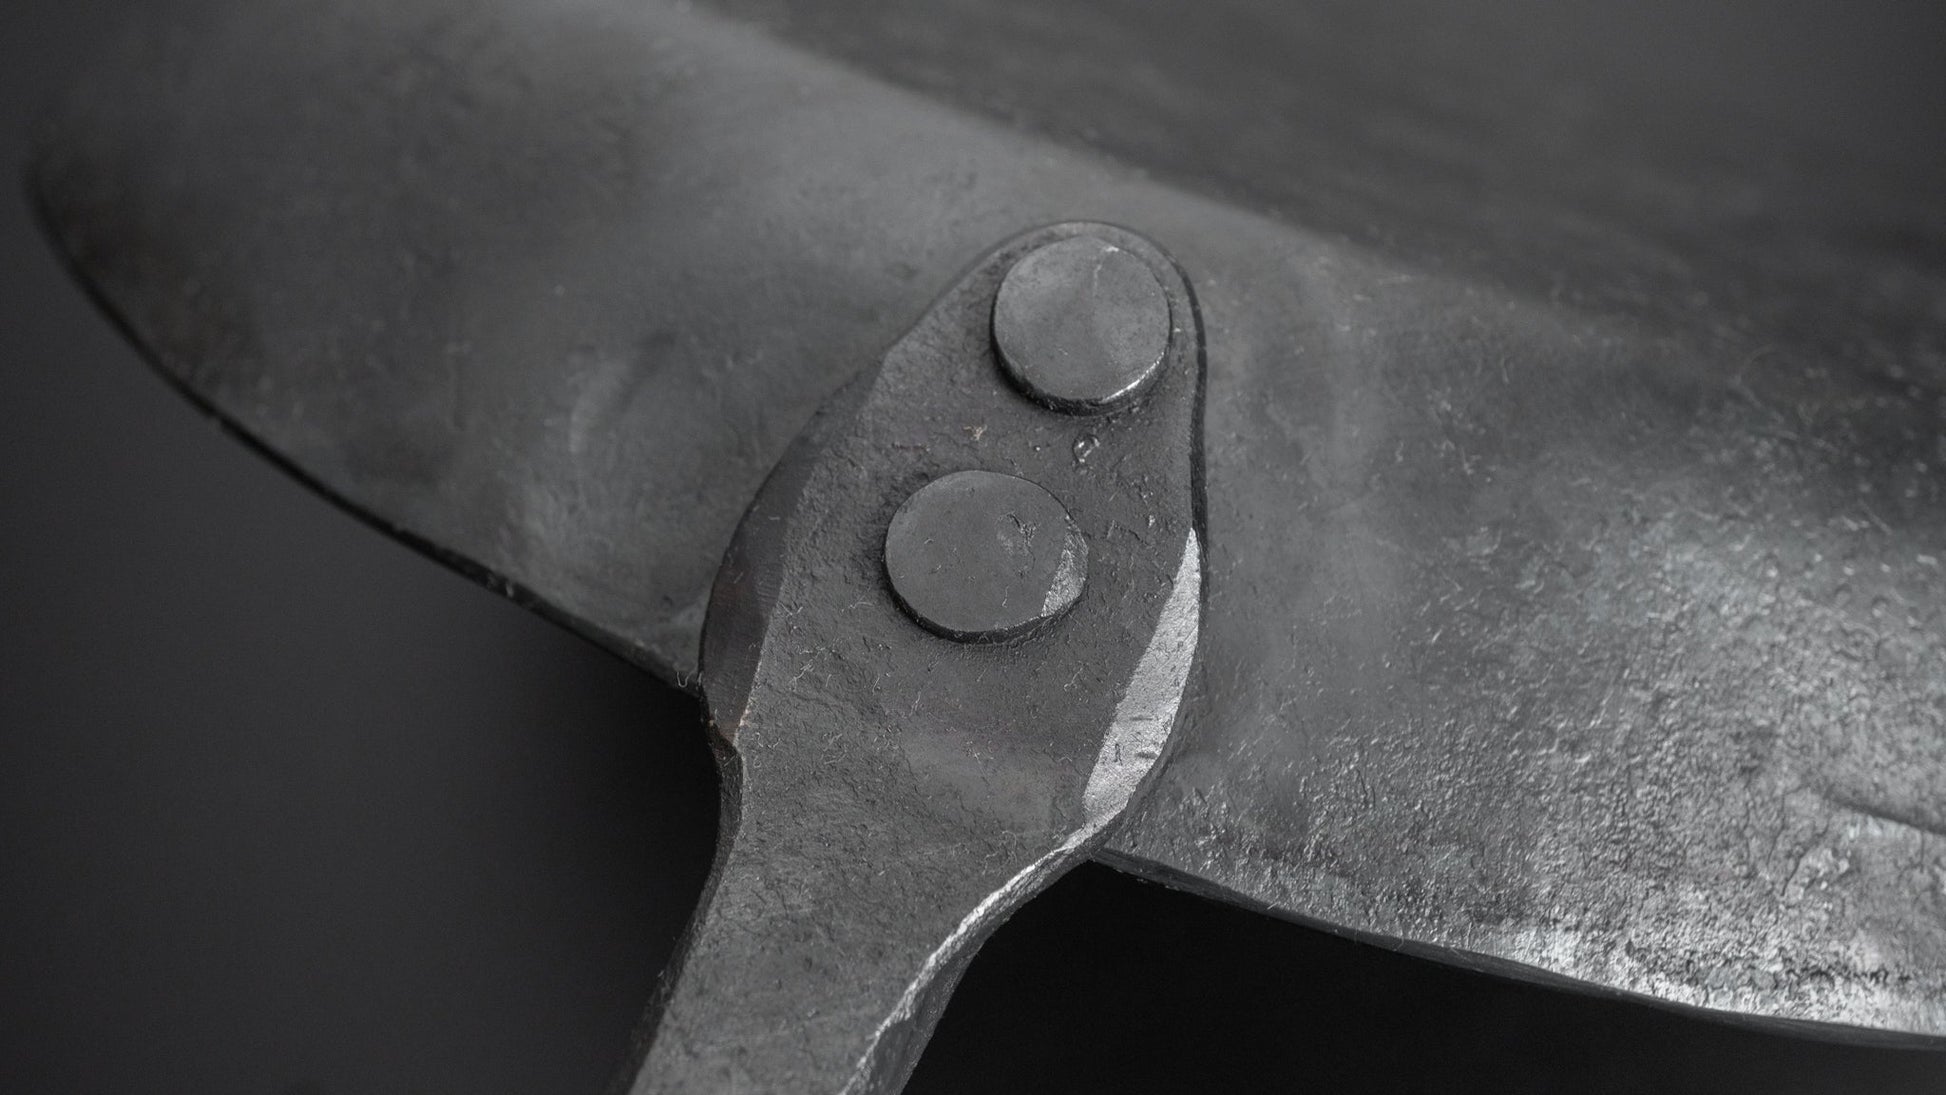 Kanatoko Poêle à frire en fer forgé à la main 230mm — Stay Sharp